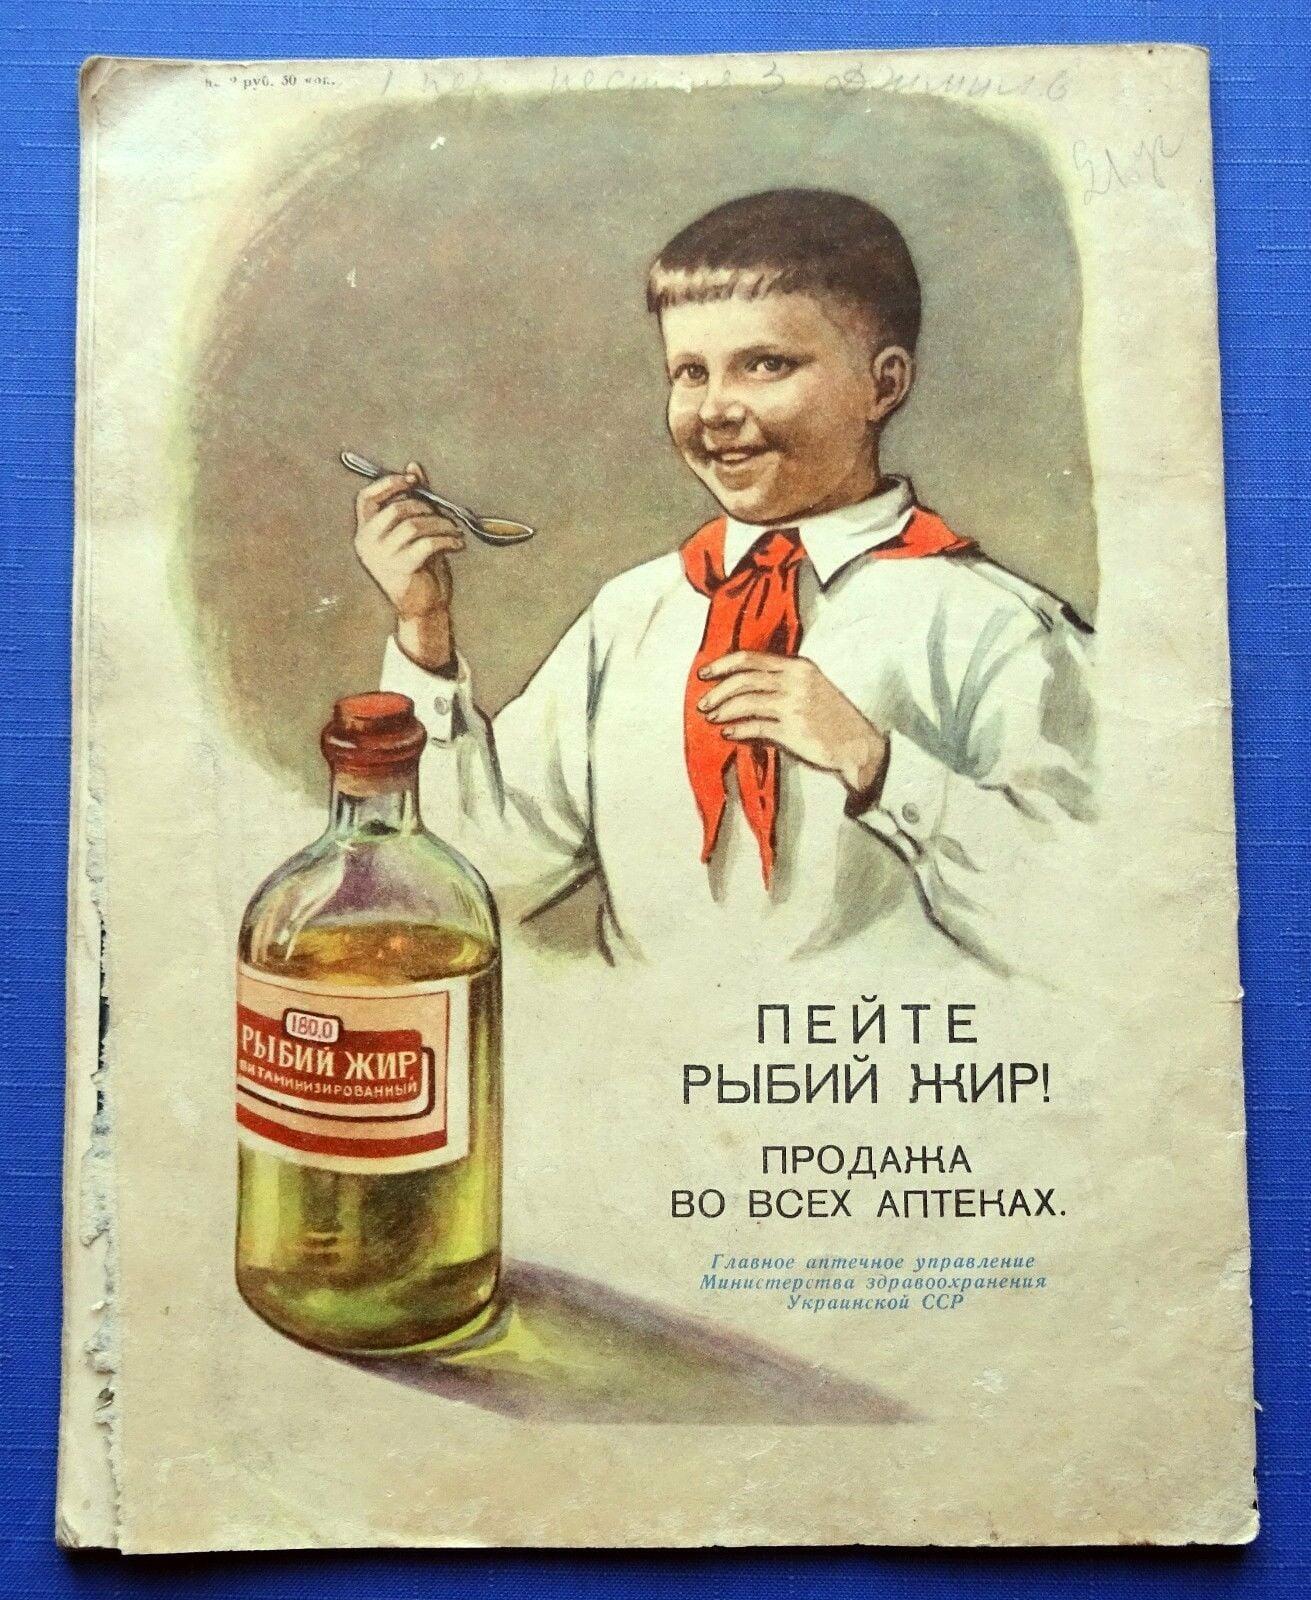 Масло будем здоровы. Старые плакаты. Старые рекламные плакаты. Плакаты советского времени. Агитационные плакаты.